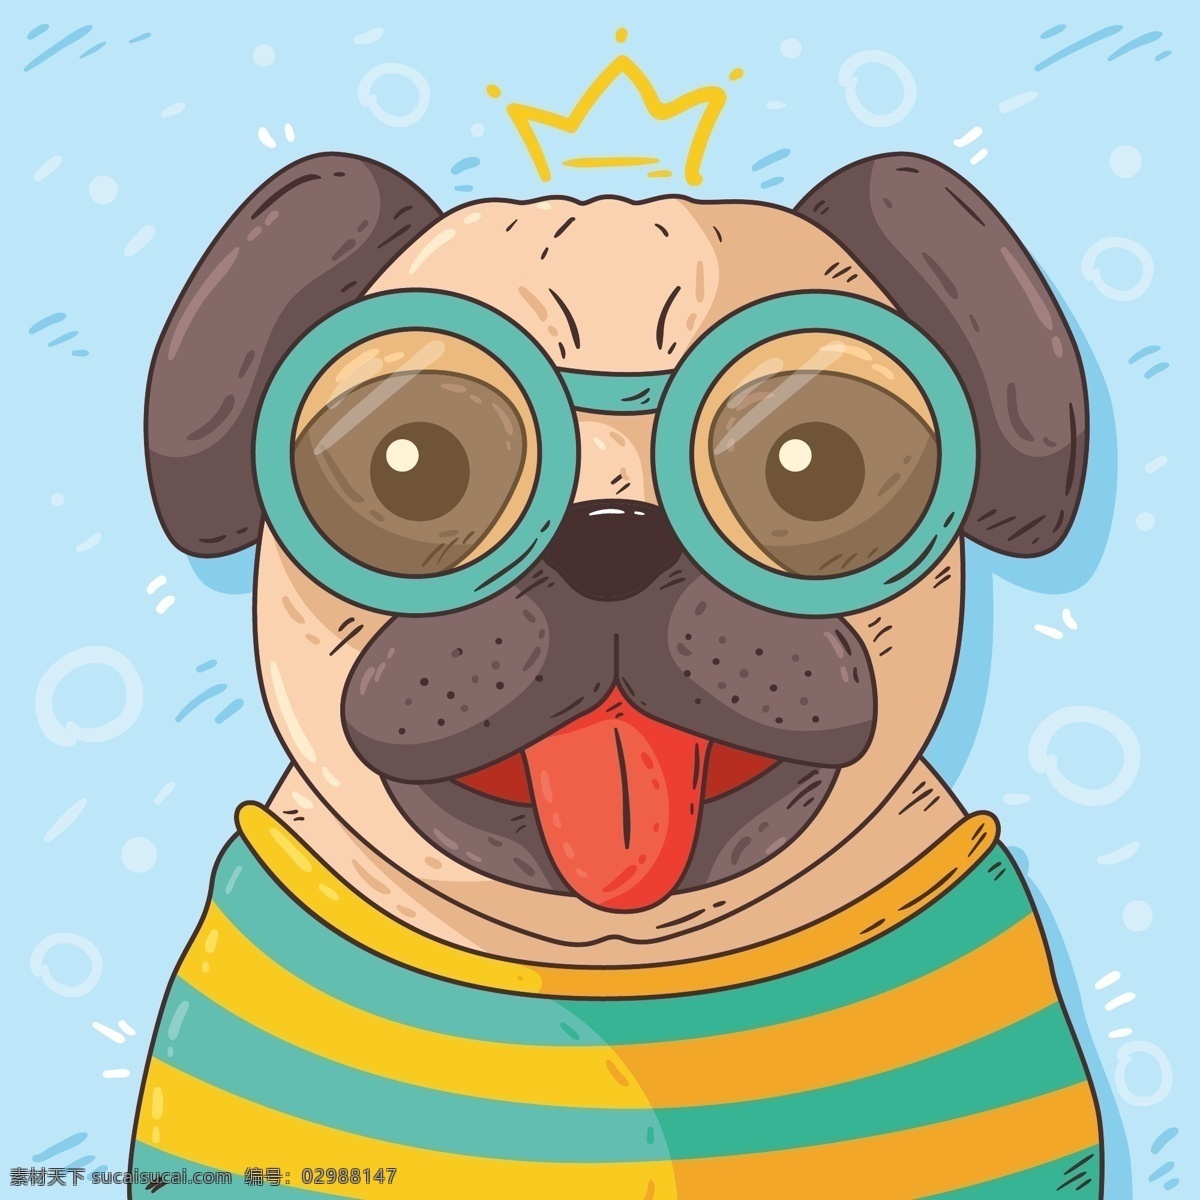 插画 戴眼镜 动物 狗 哈巴狗 可爱 可爱宠物 犬 手绘 王冠 戴 眼镜